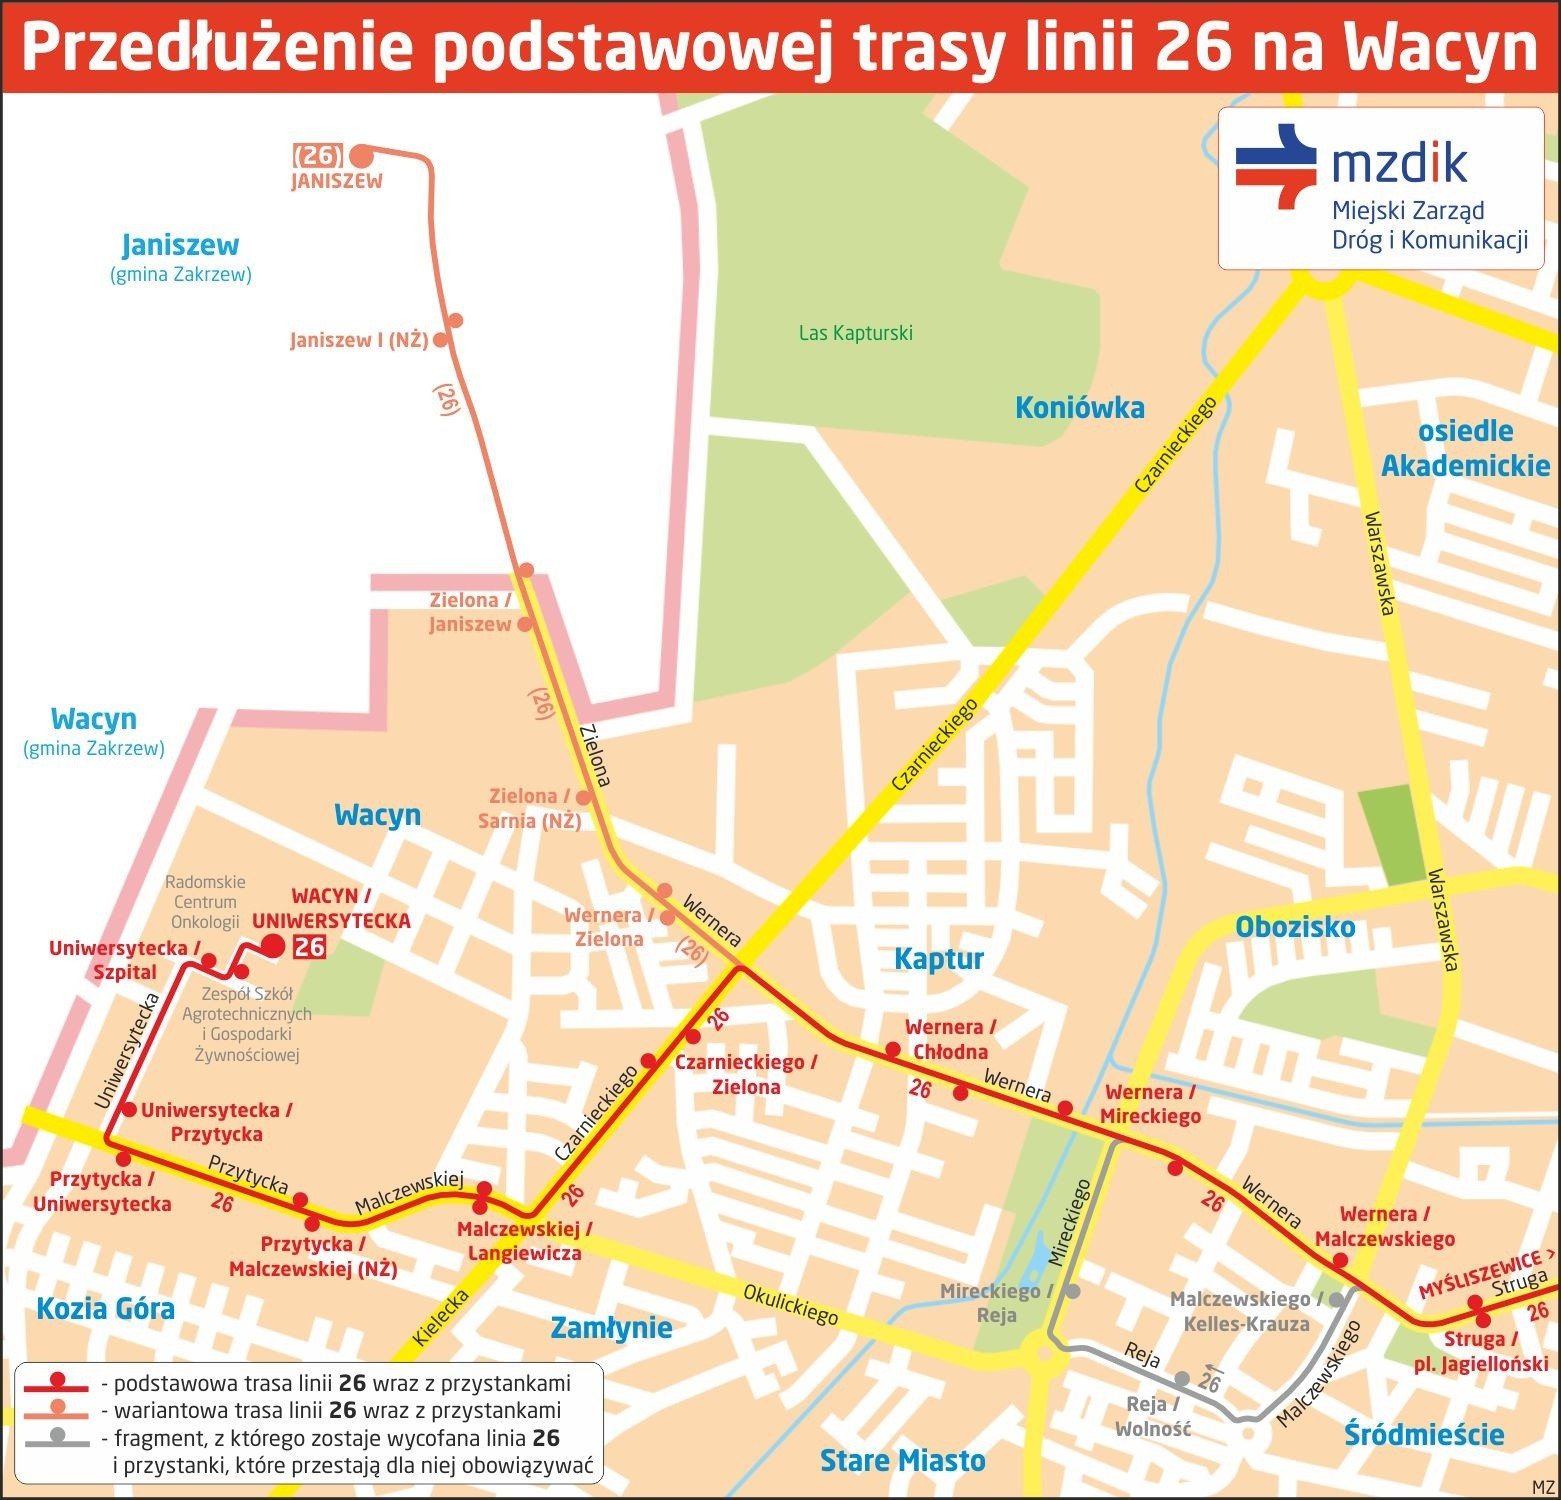 MZDiK Radom. Przedłużenie trasy linii 26 na Wacyn w pobliże szpitala | Echo  Dnia Radomskie